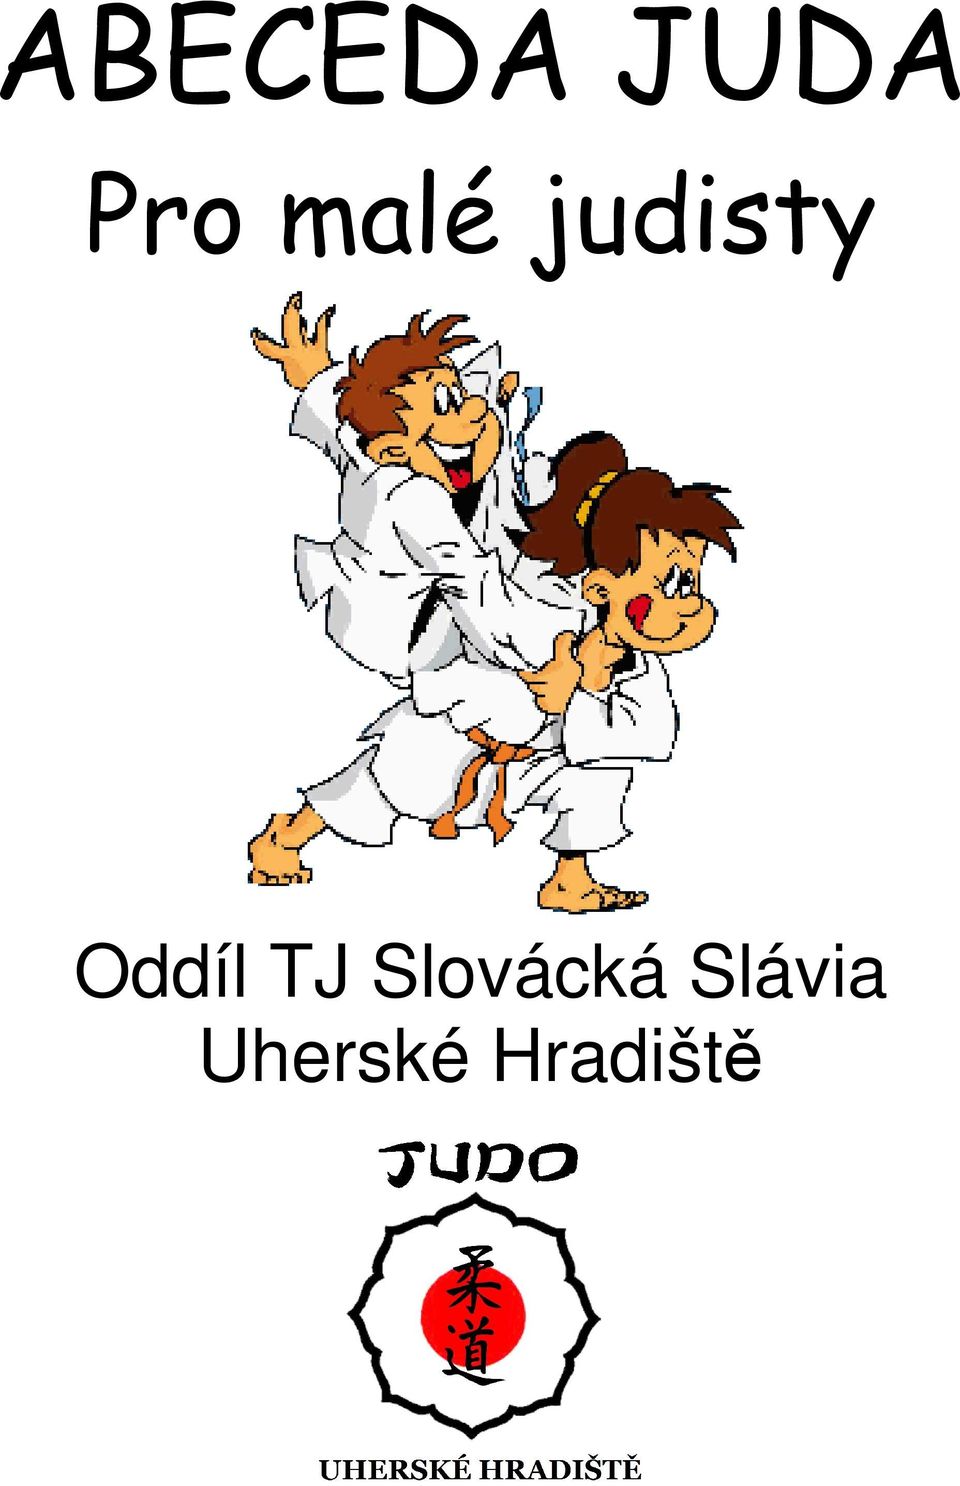 Oddíl TJ Slovácká